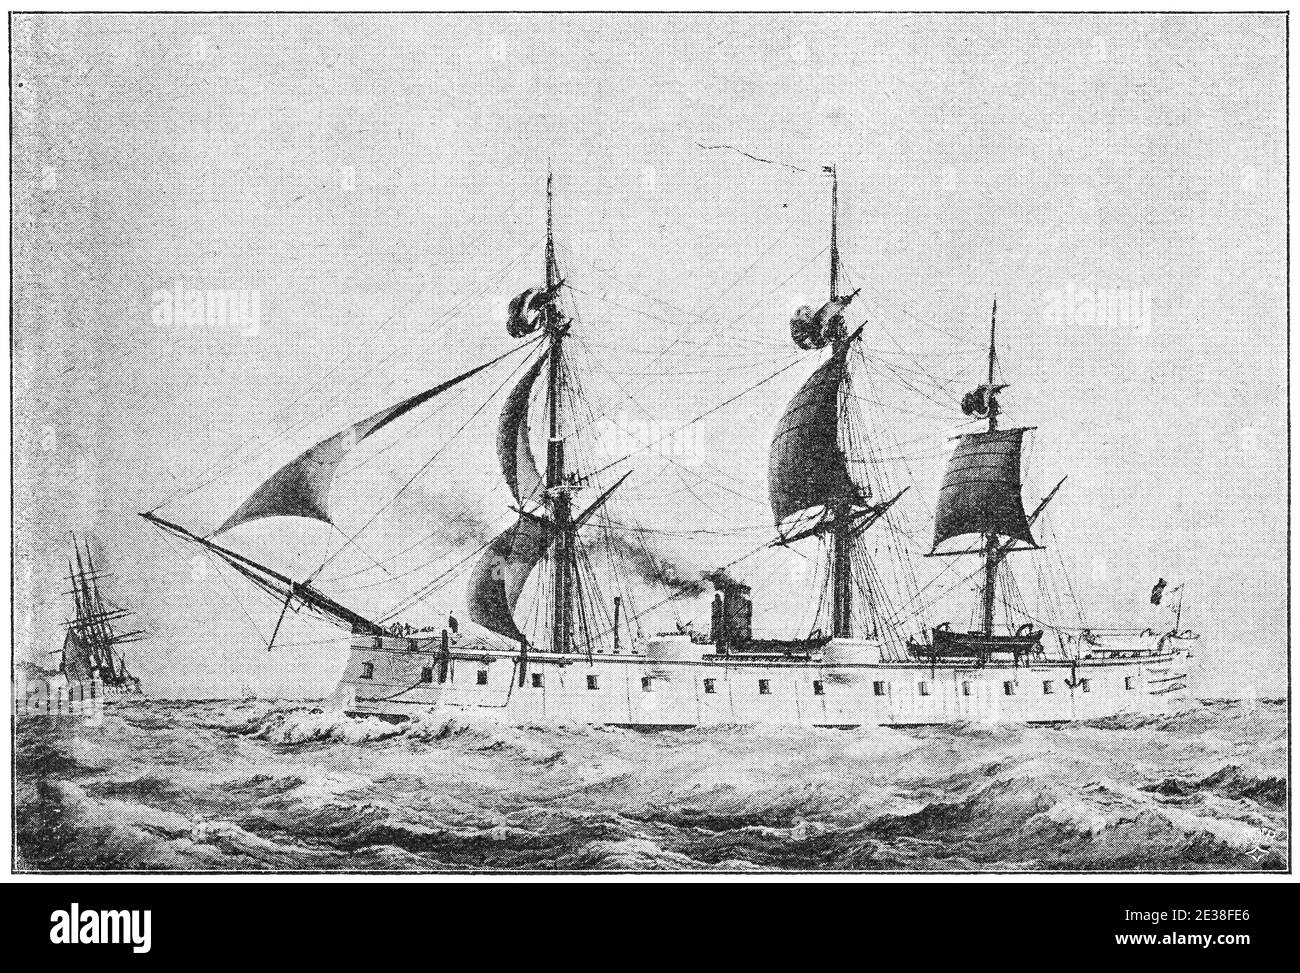 Ocean (1865) - une frégate blindée en bois construite pour la Marine française. Illustration du 19e siècle. Allemagne. Arrière-plan blanc. Banque D'Images